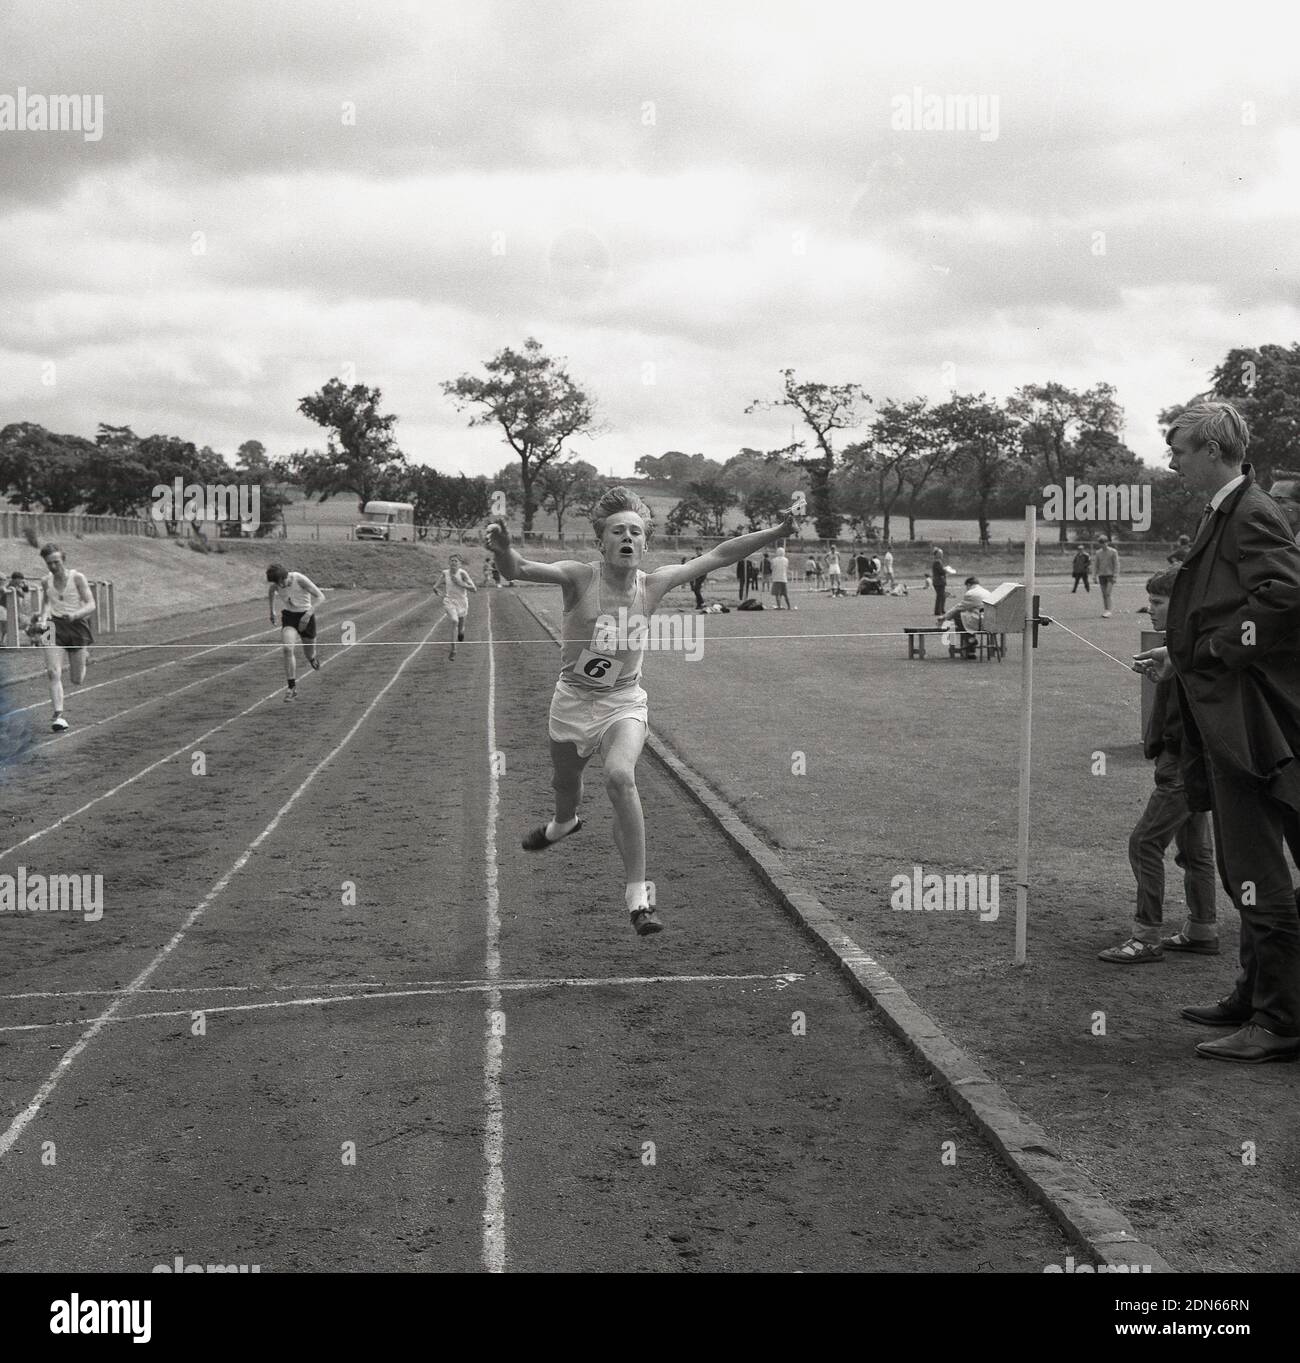 1960s, uomini storici, giovani che gareggiano in una corsa fuori su una pista di cenere, in un giorno di sport della contea, Fife, Scozia, con un giovane che allunga le braccia davanti mentre arriva fino al nastro di finitura. Foto Stock